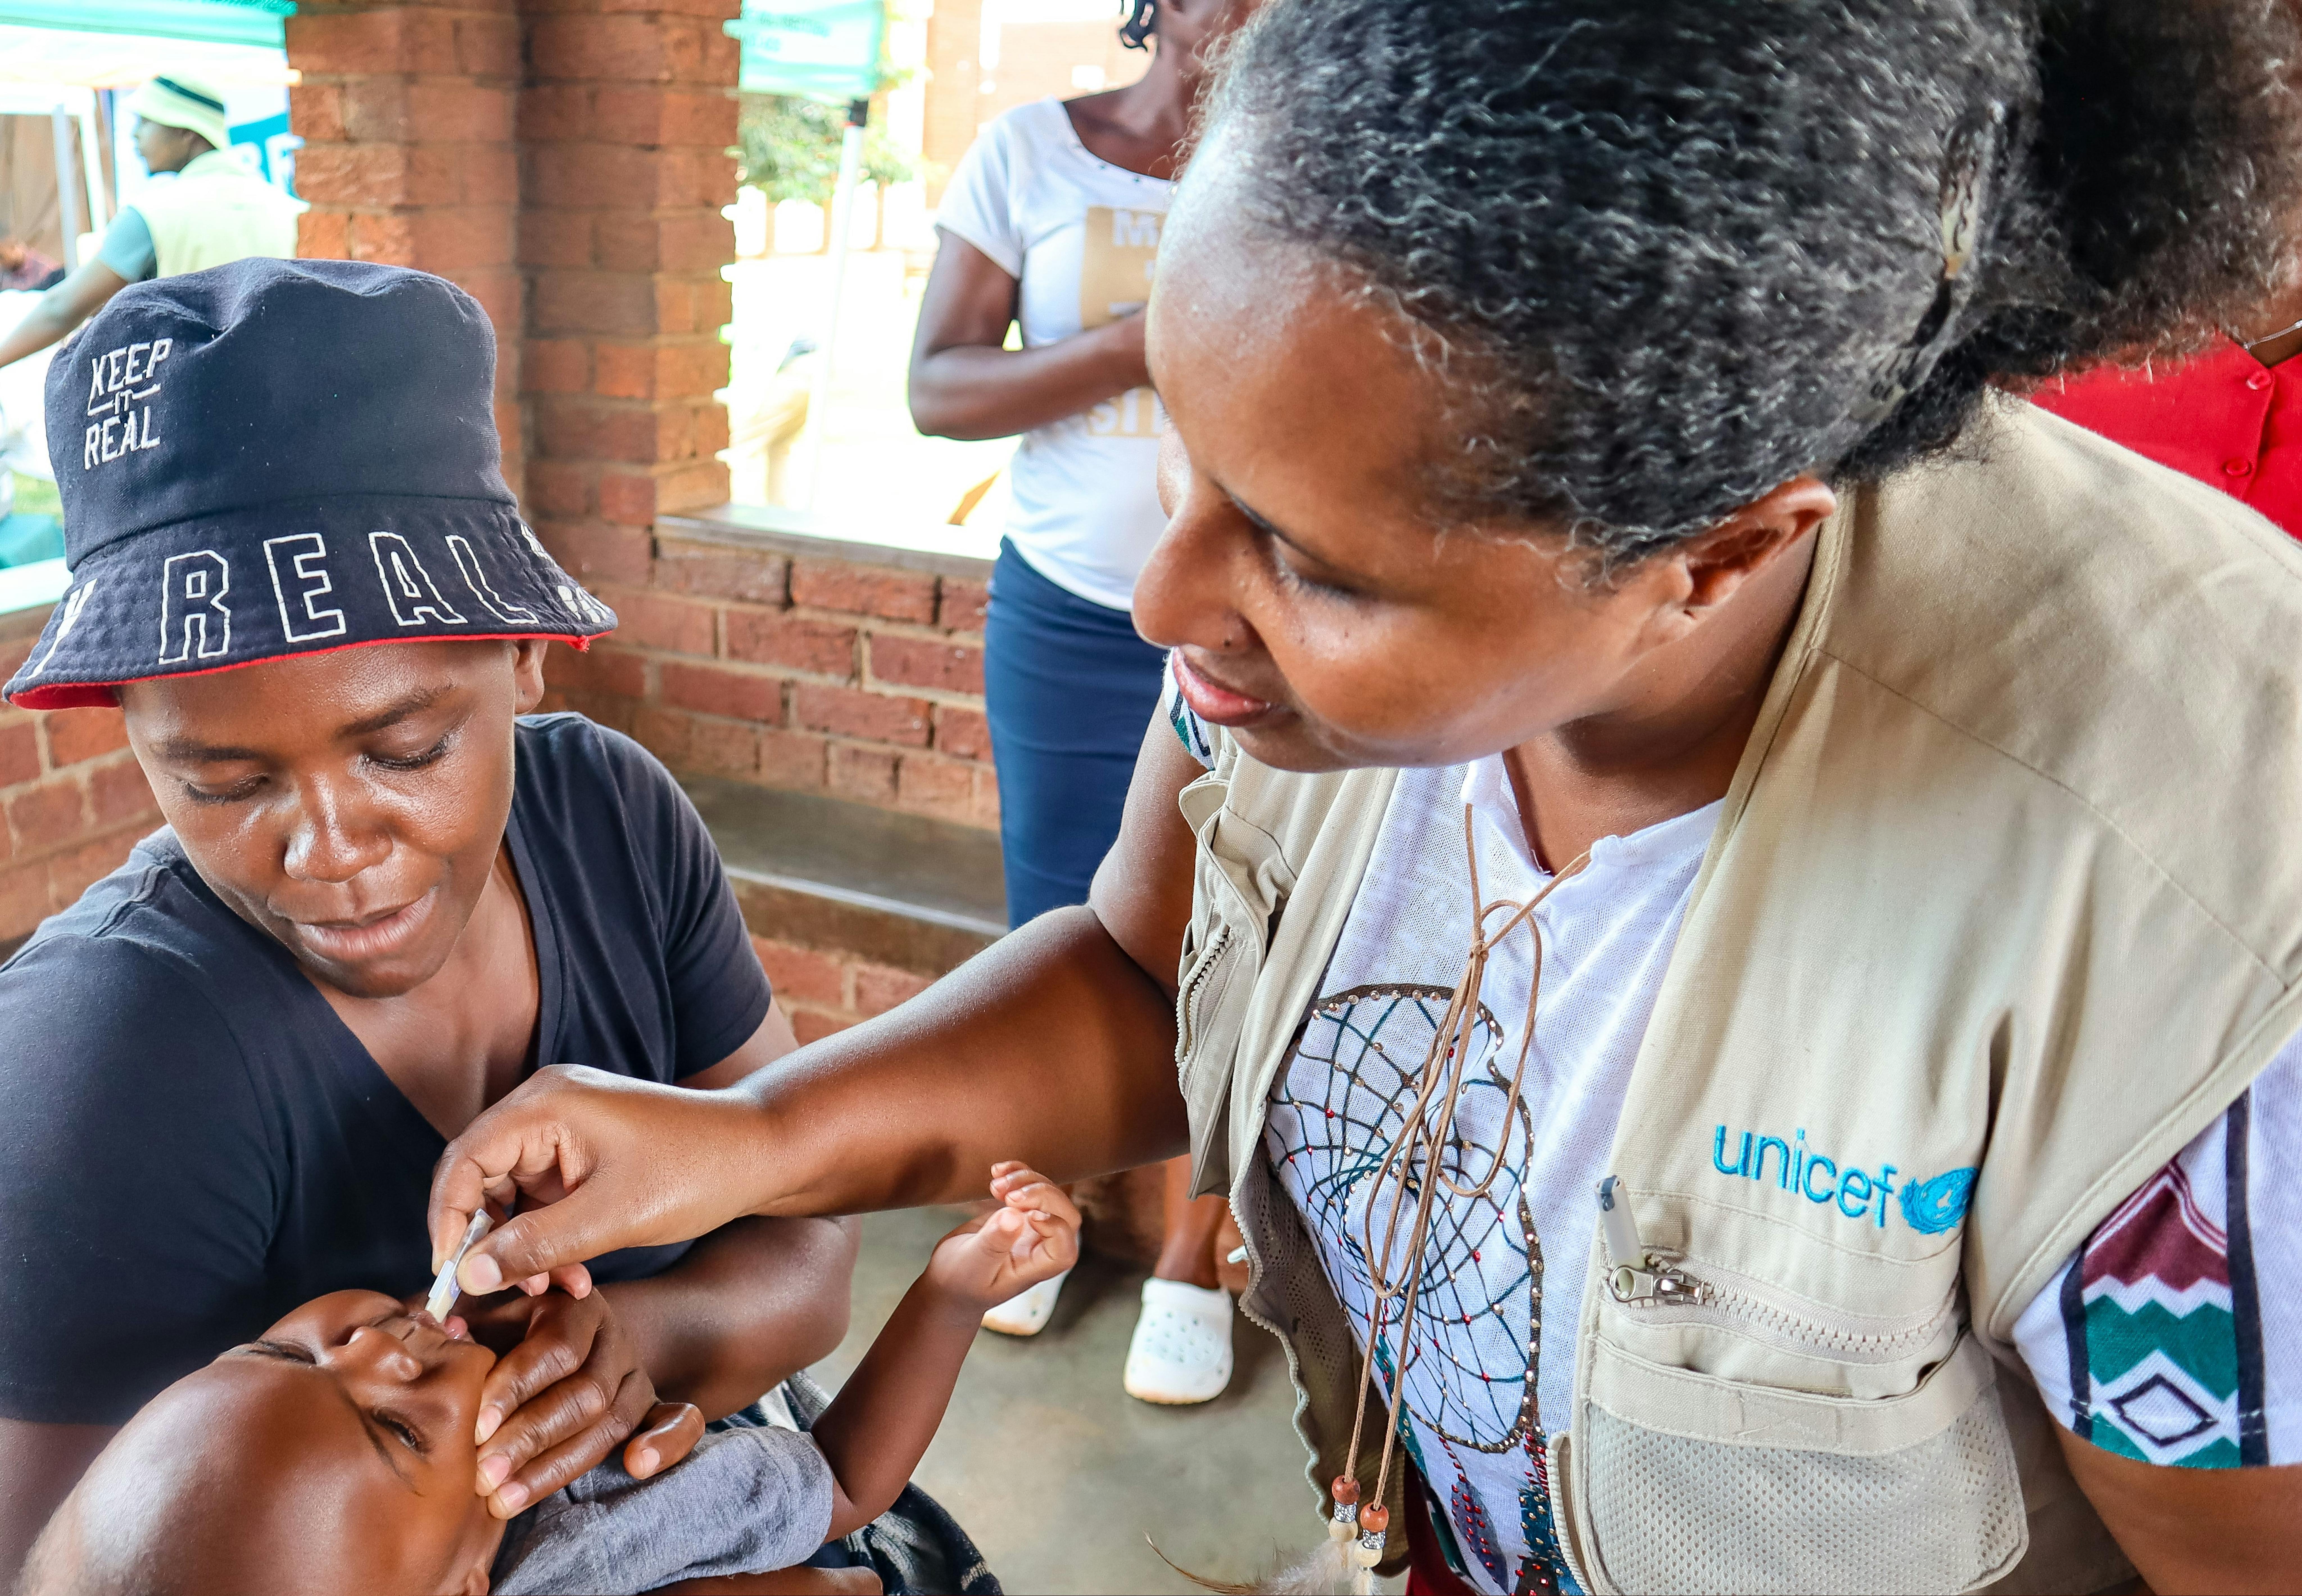 Un'operatrice UNICEF somministra il vaccino contro il colera ad un bambino, tenuto in braccio dalla mamma. Siamo in Zimbabwe, uno dei 13 paesi colpiti dalle più grande epidemia di colera degli ultimi anni